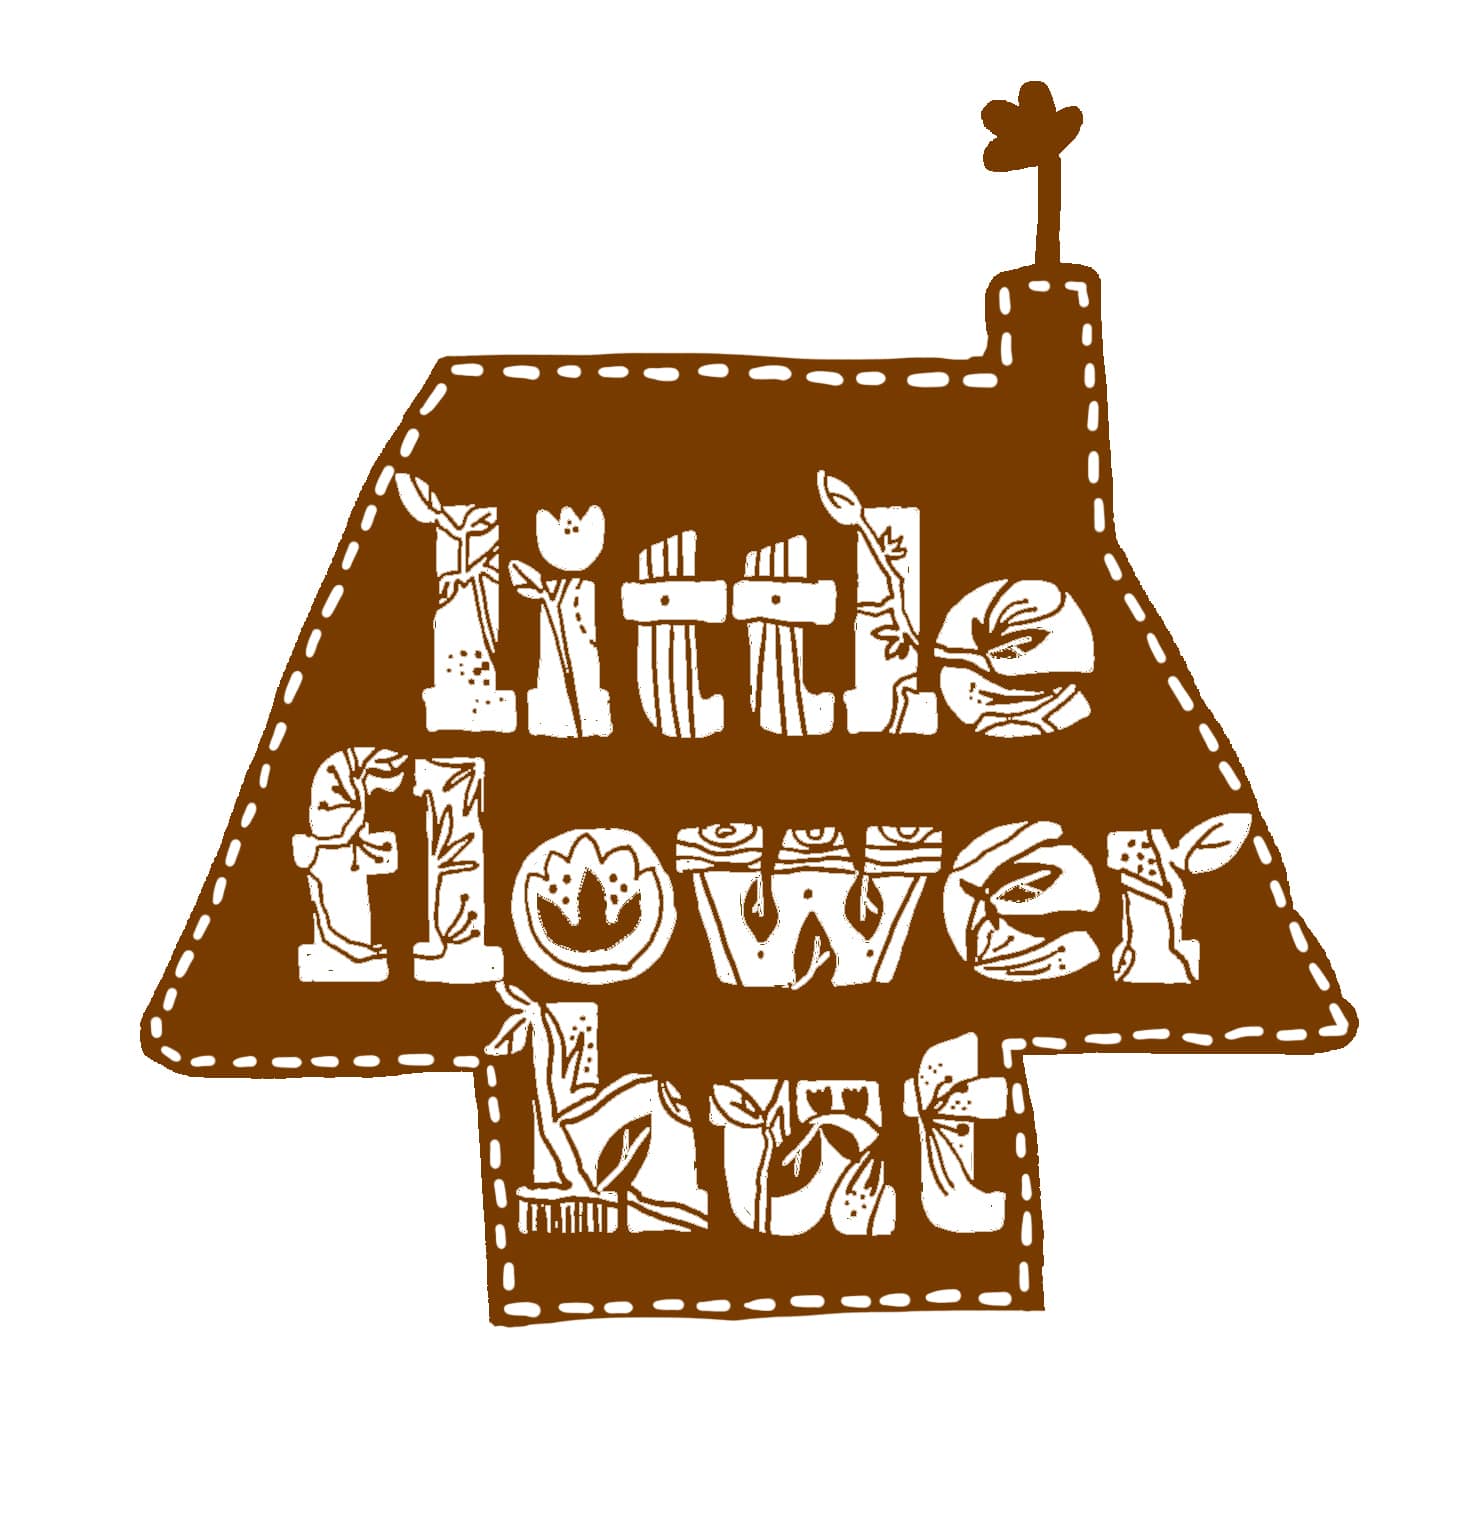 Little Flower Hut Review